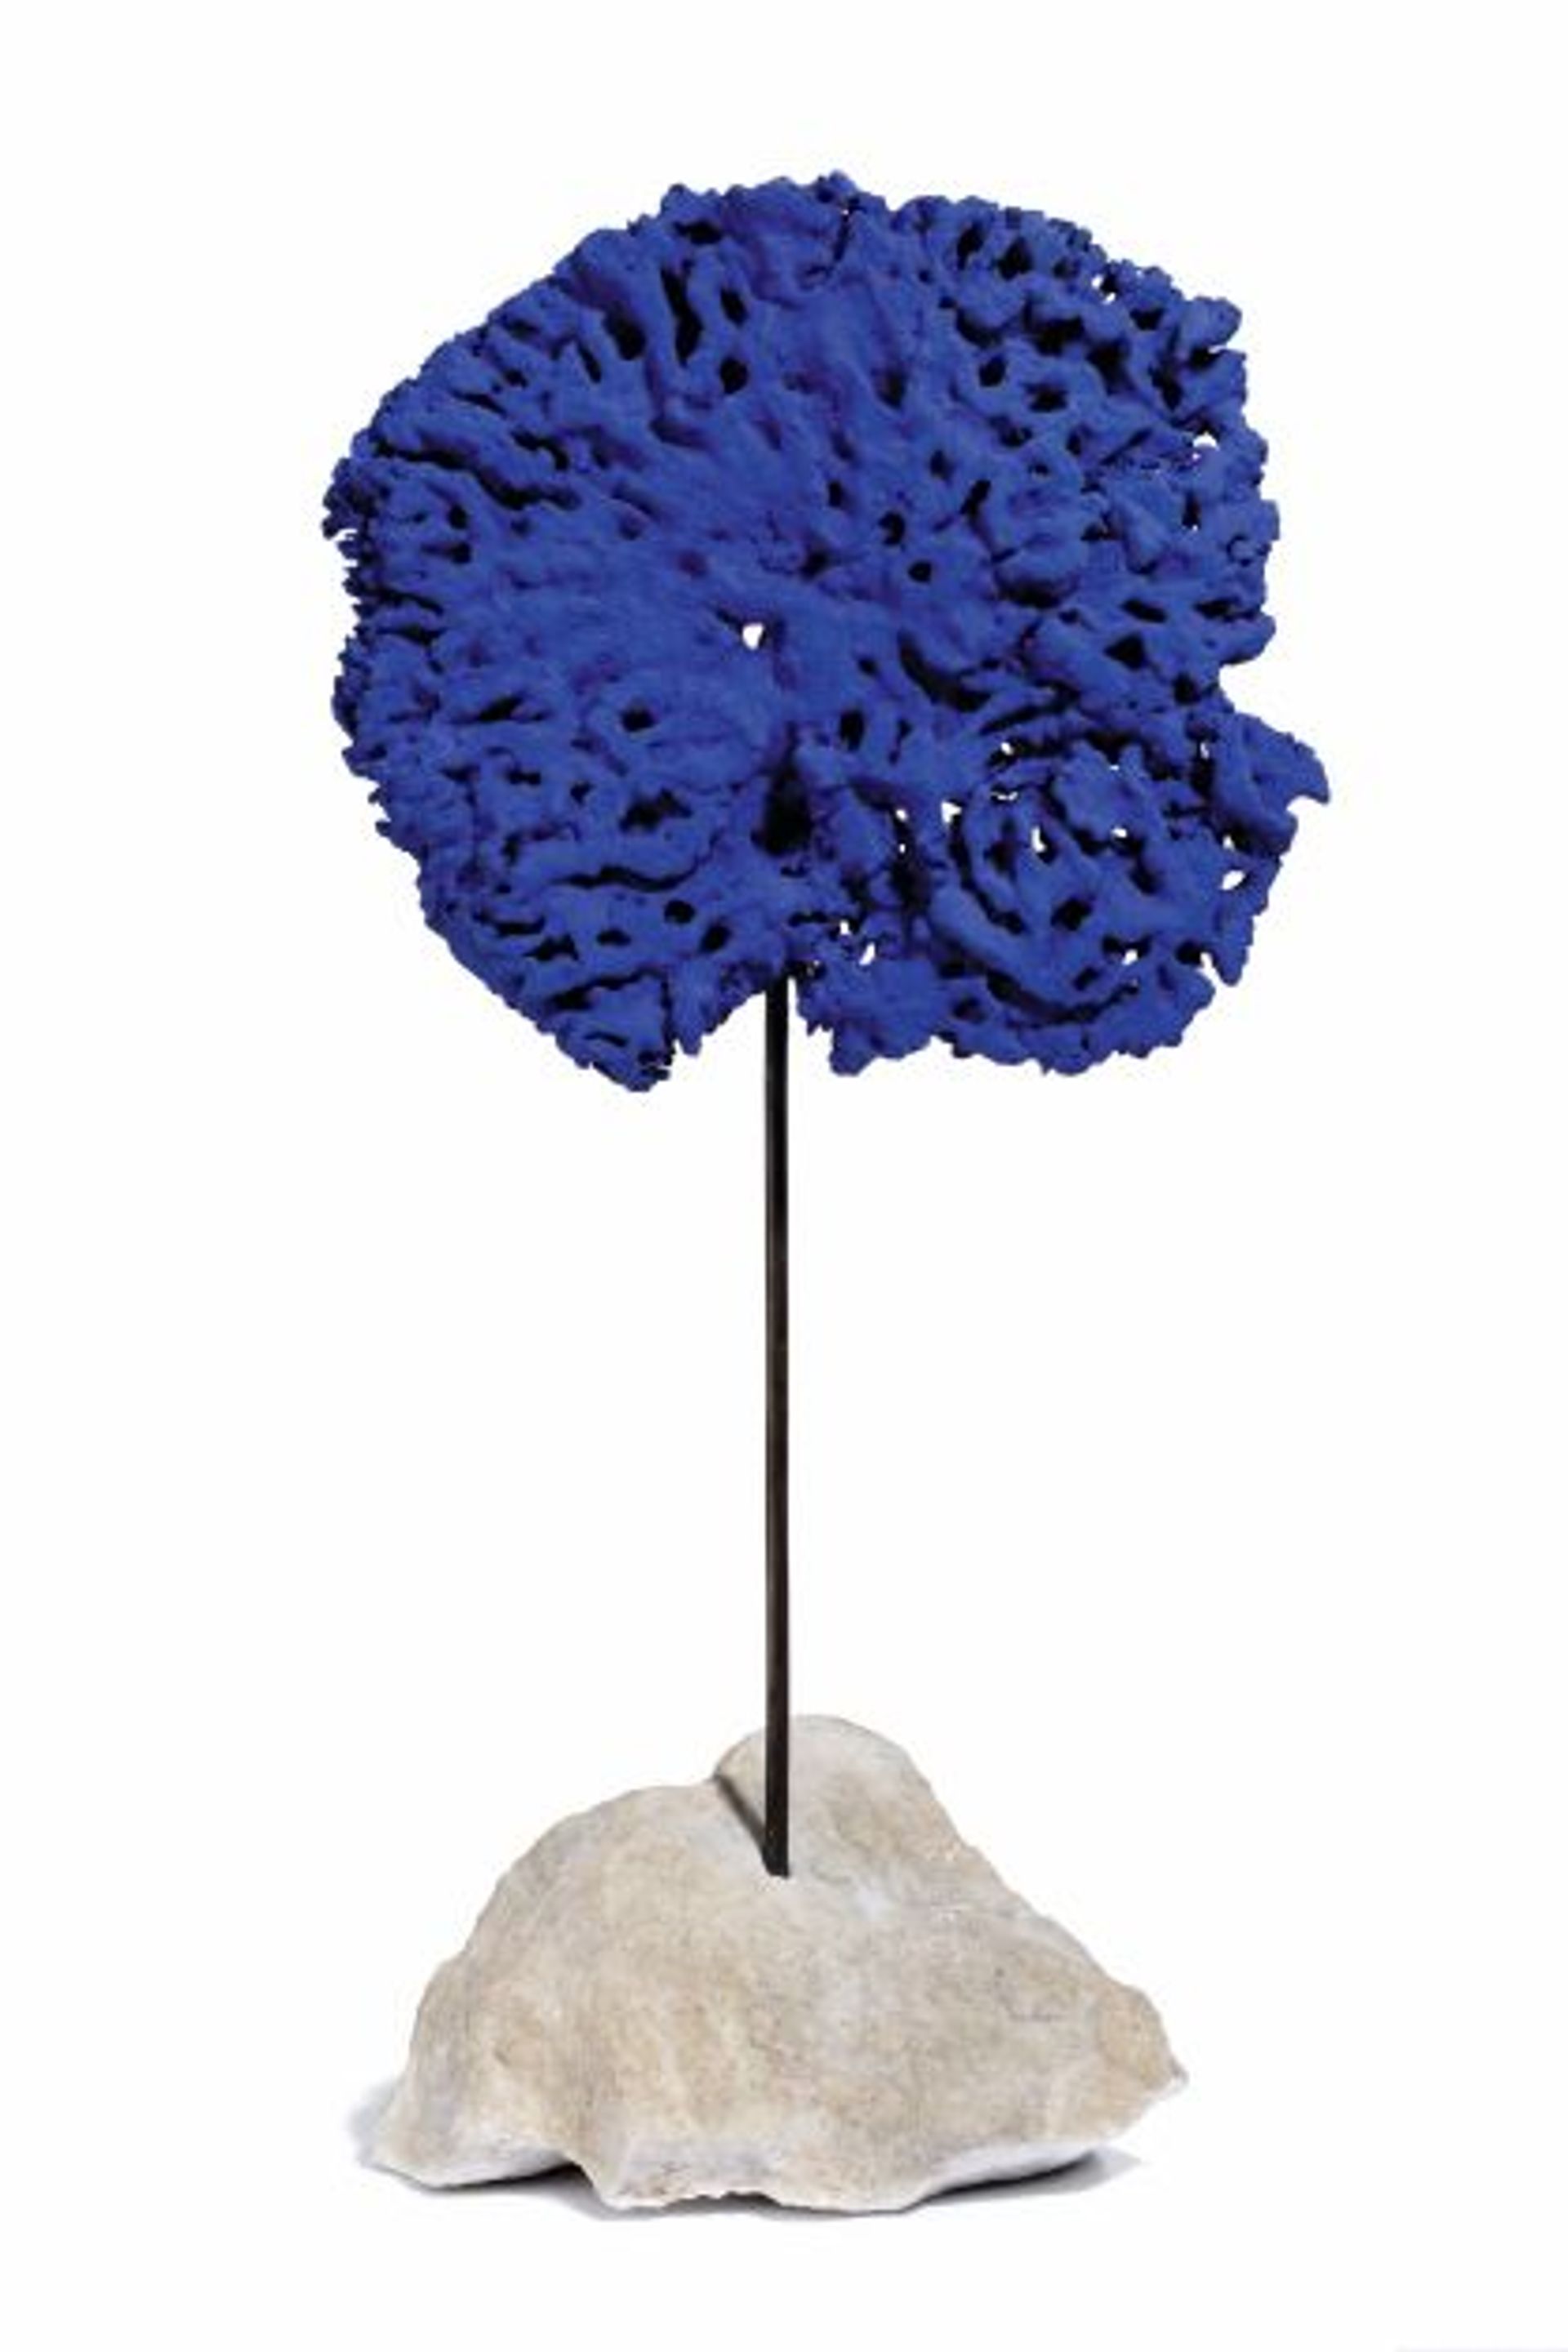 Yves Klein, Sans titre (SE 44), série Sculpture Éponge bleue, vers 1960,
pigment pur et résine synthétique sur éponge naturelle, tige métallique et pierre, collection particulière.
© Succession Yves Klein